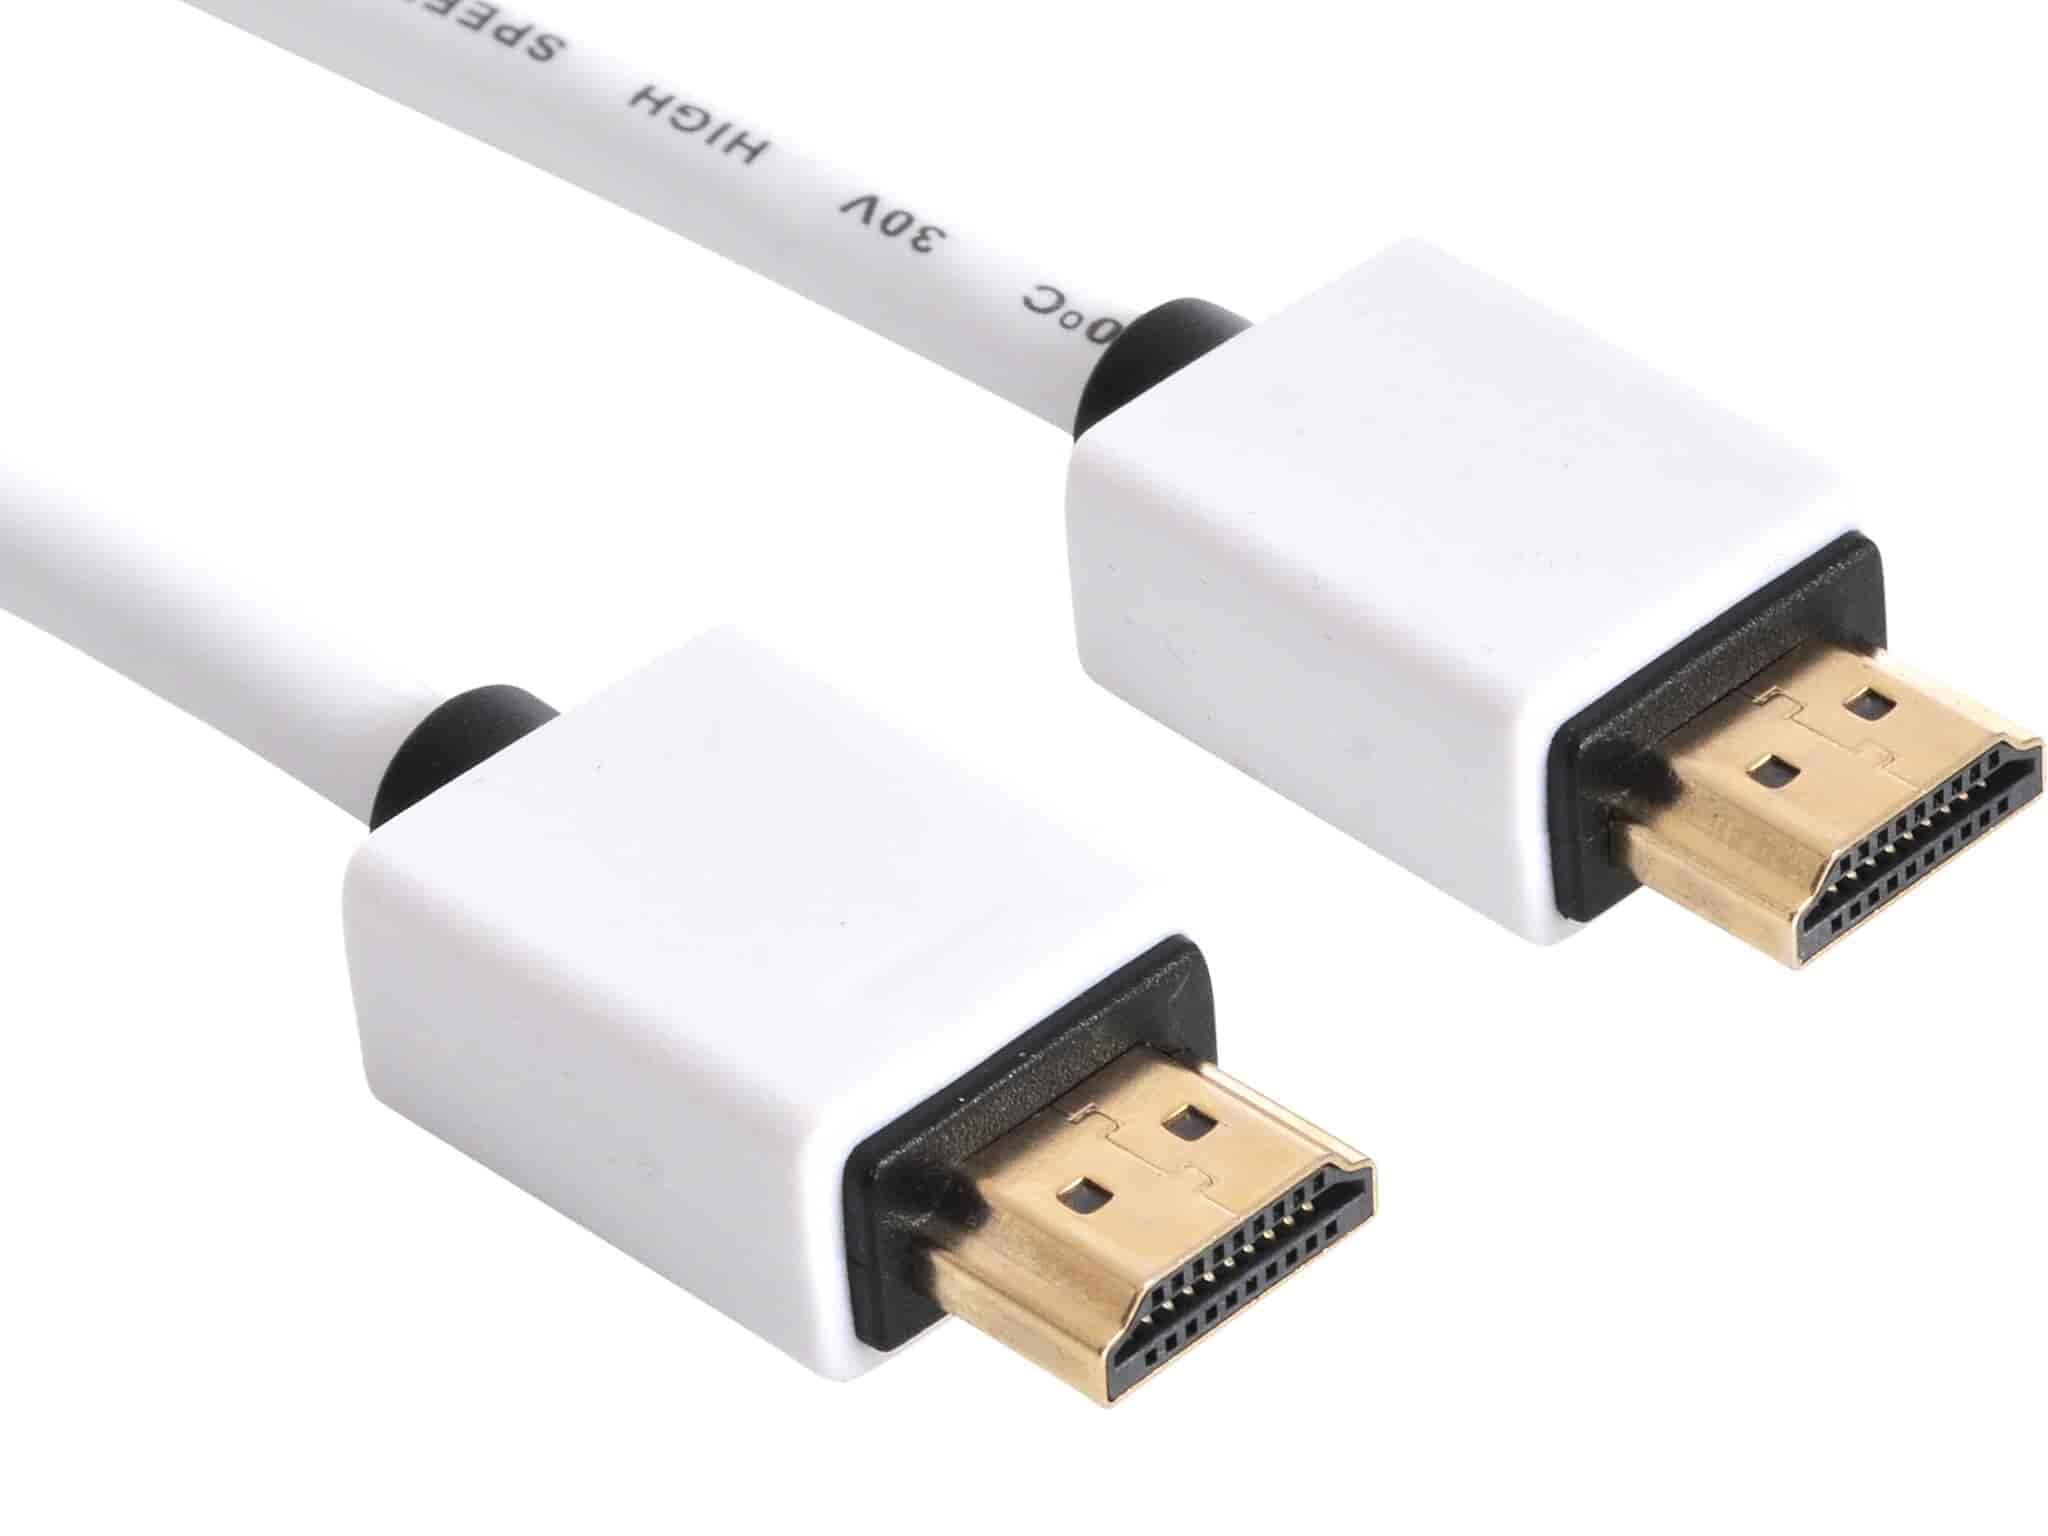 HDMI kabel. HDMI 2.0 kabel i god kvalitet til en fair pris.